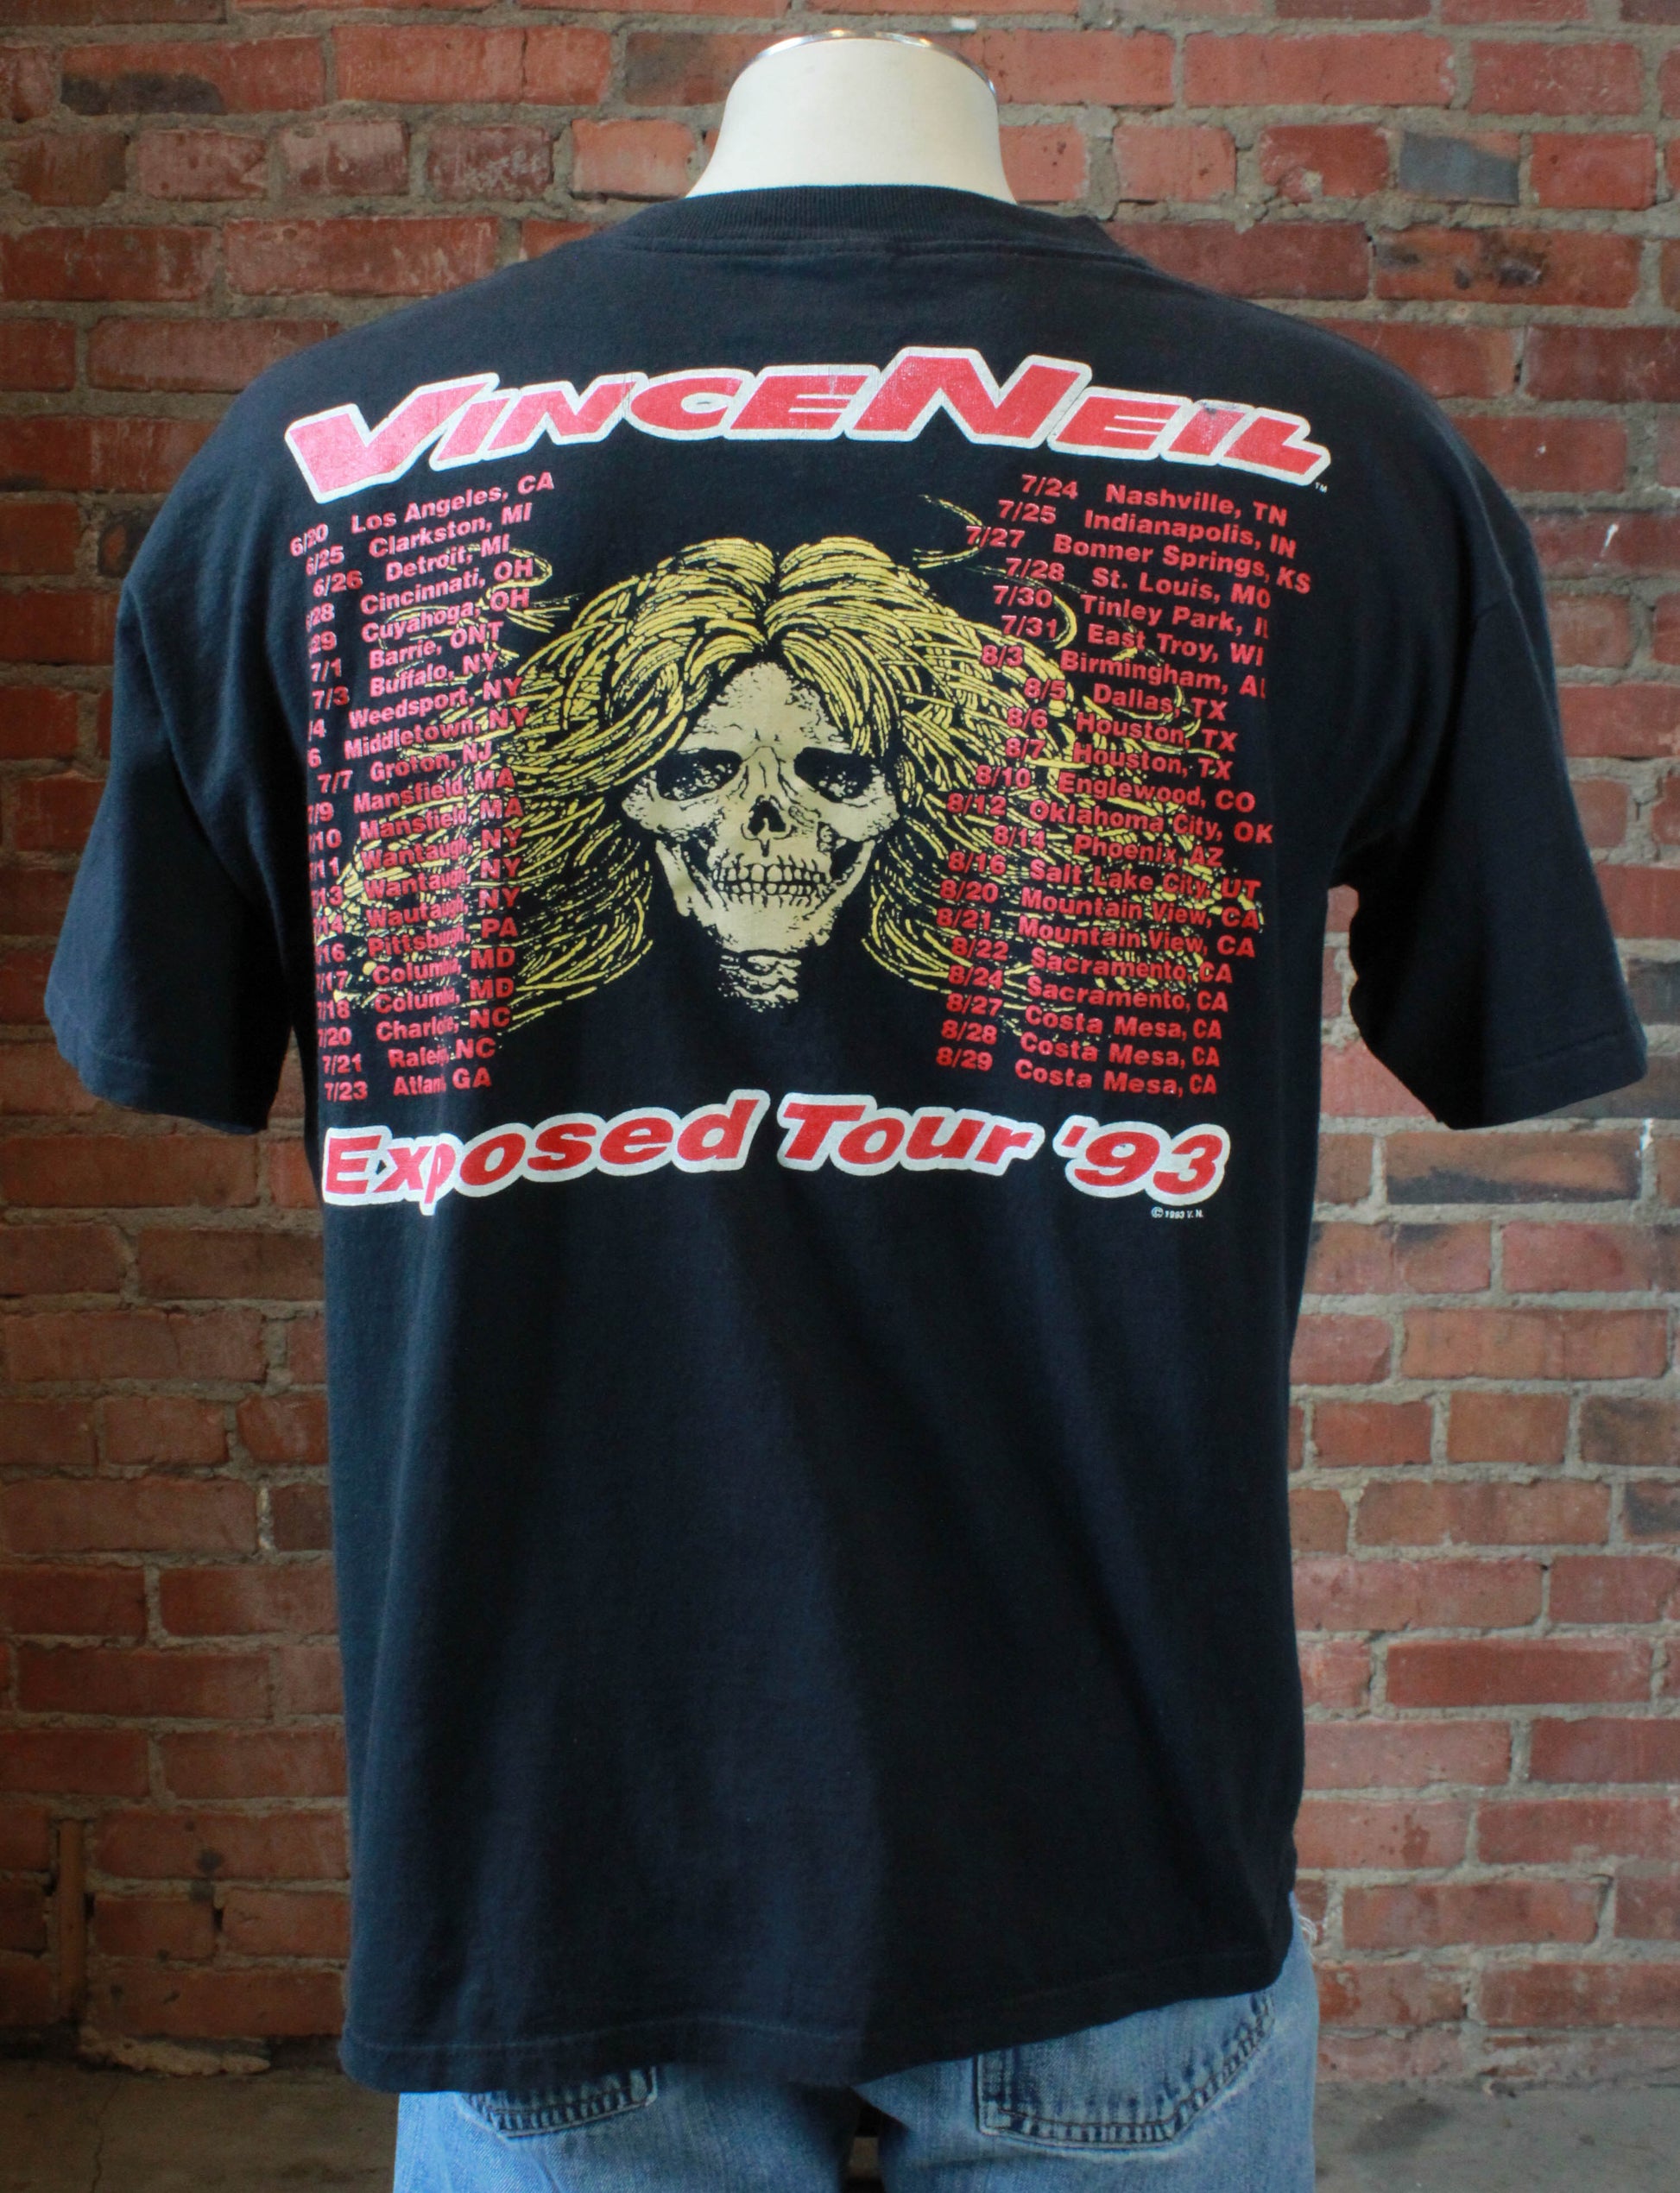 Vintage Vince Neil Concert T Shirt 1993 Exposed Tour Unisex Extra Large